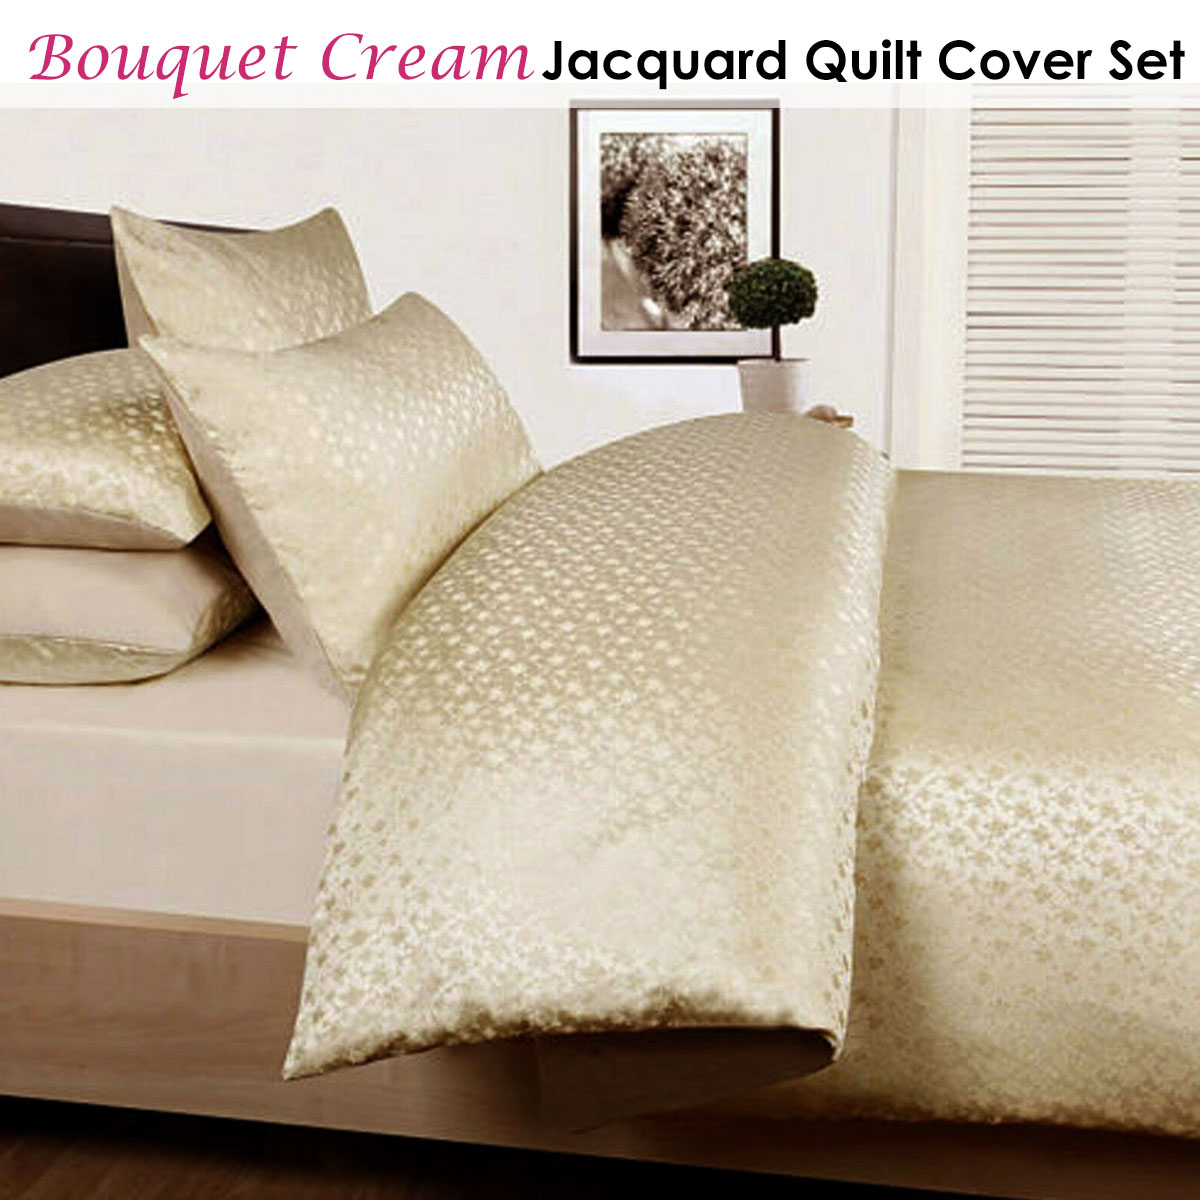 Bouquet Cream Jacquard Quilt Cover Set by Accessorize